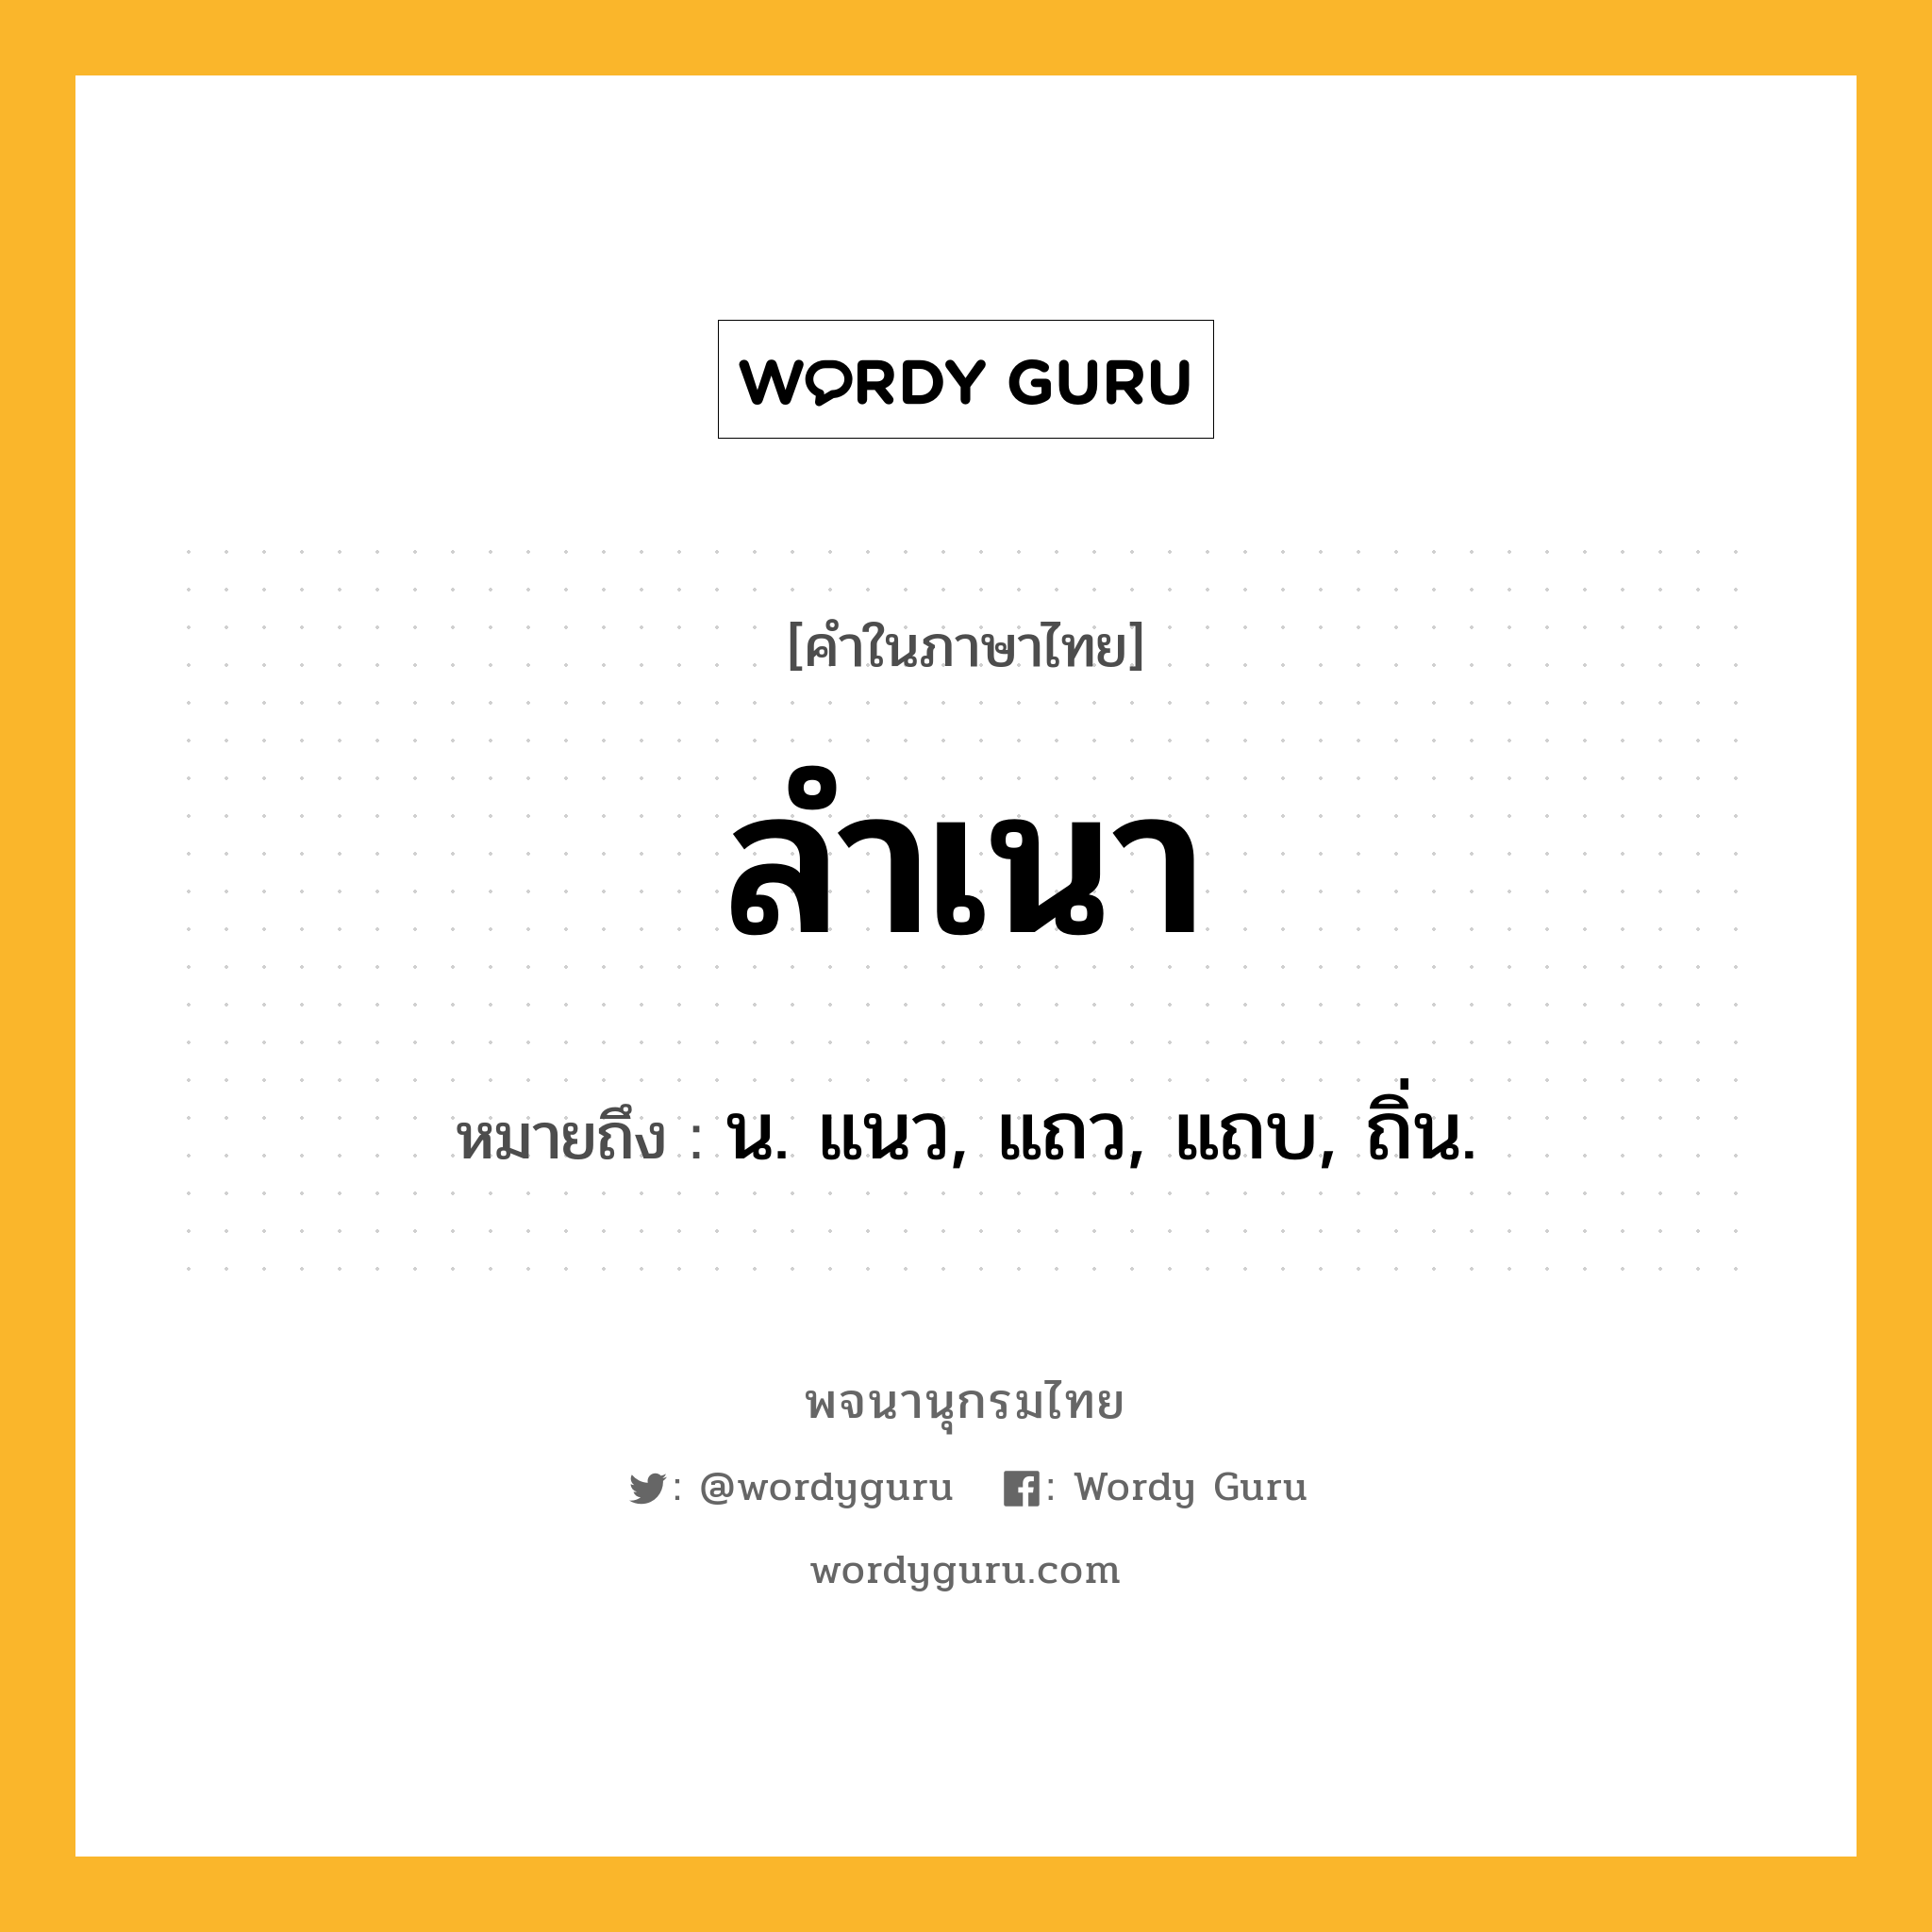 ลำเนา หมายถึงอะไร?, คำในภาษาไทย ลำเนา หมายถึง น. แนว, แถว, แถบ, ถิ่น.